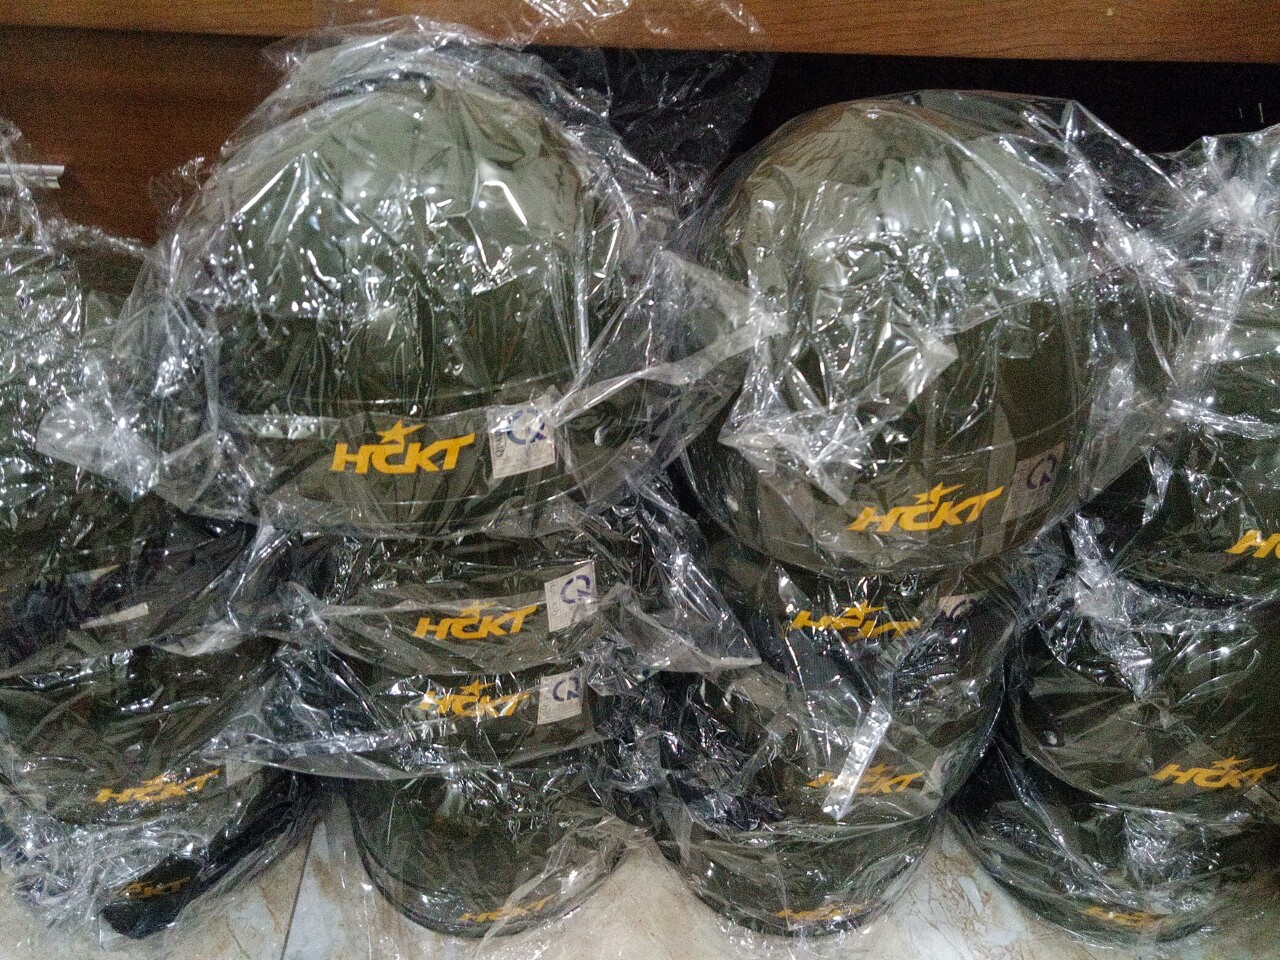 Mũ Bảo Hiểm HCKT M15 Chuyên Dùng Cho CA,  Hàng Cao Cấp Chính Hãng KitAcoom